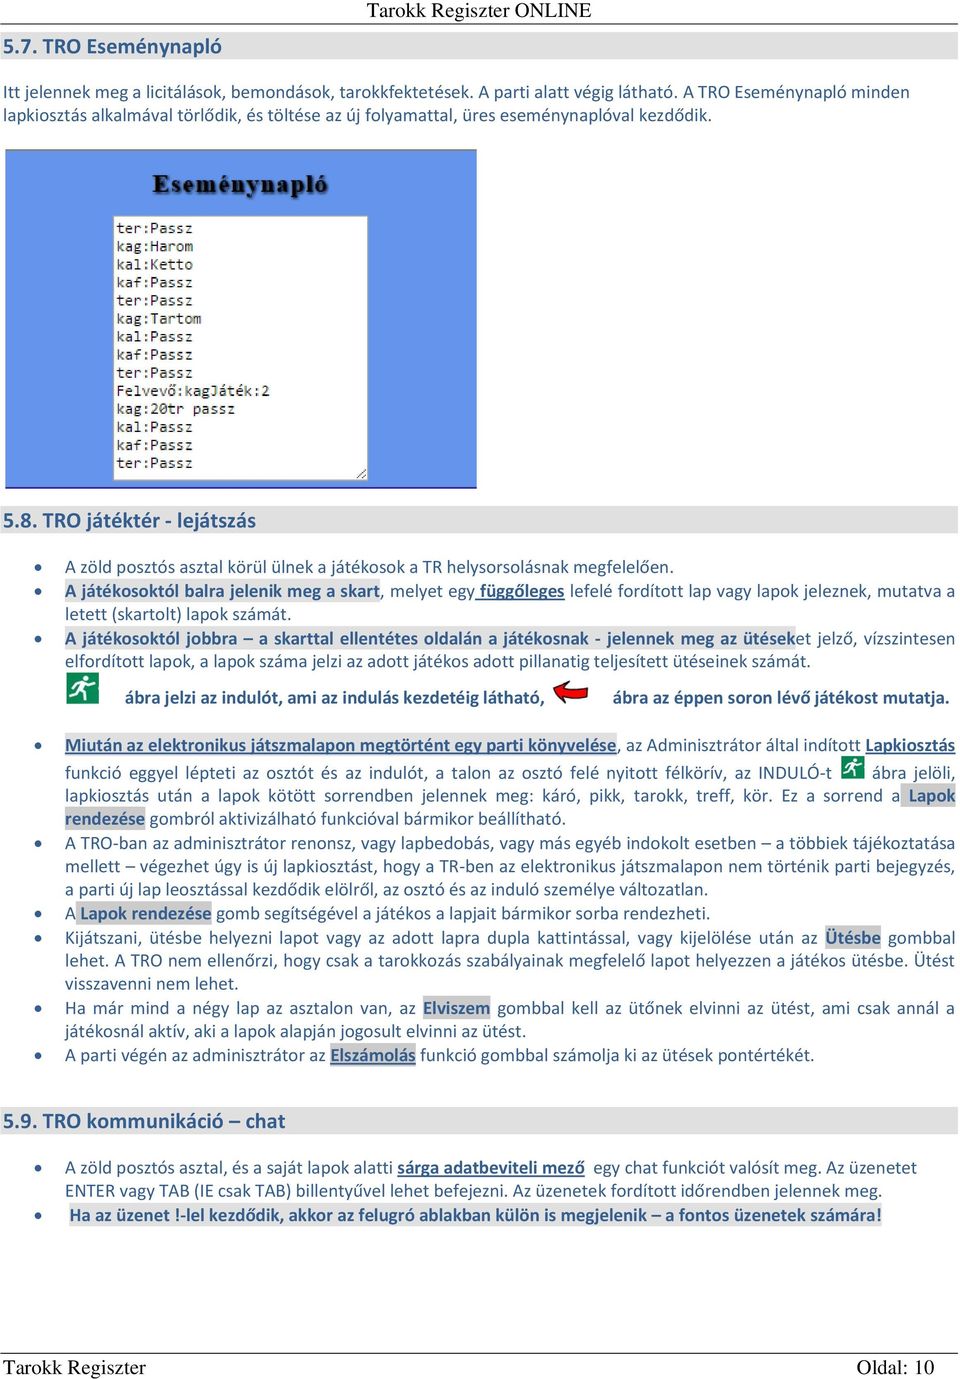 Tarokk Regiszter. Tartalom - PDF Free Download